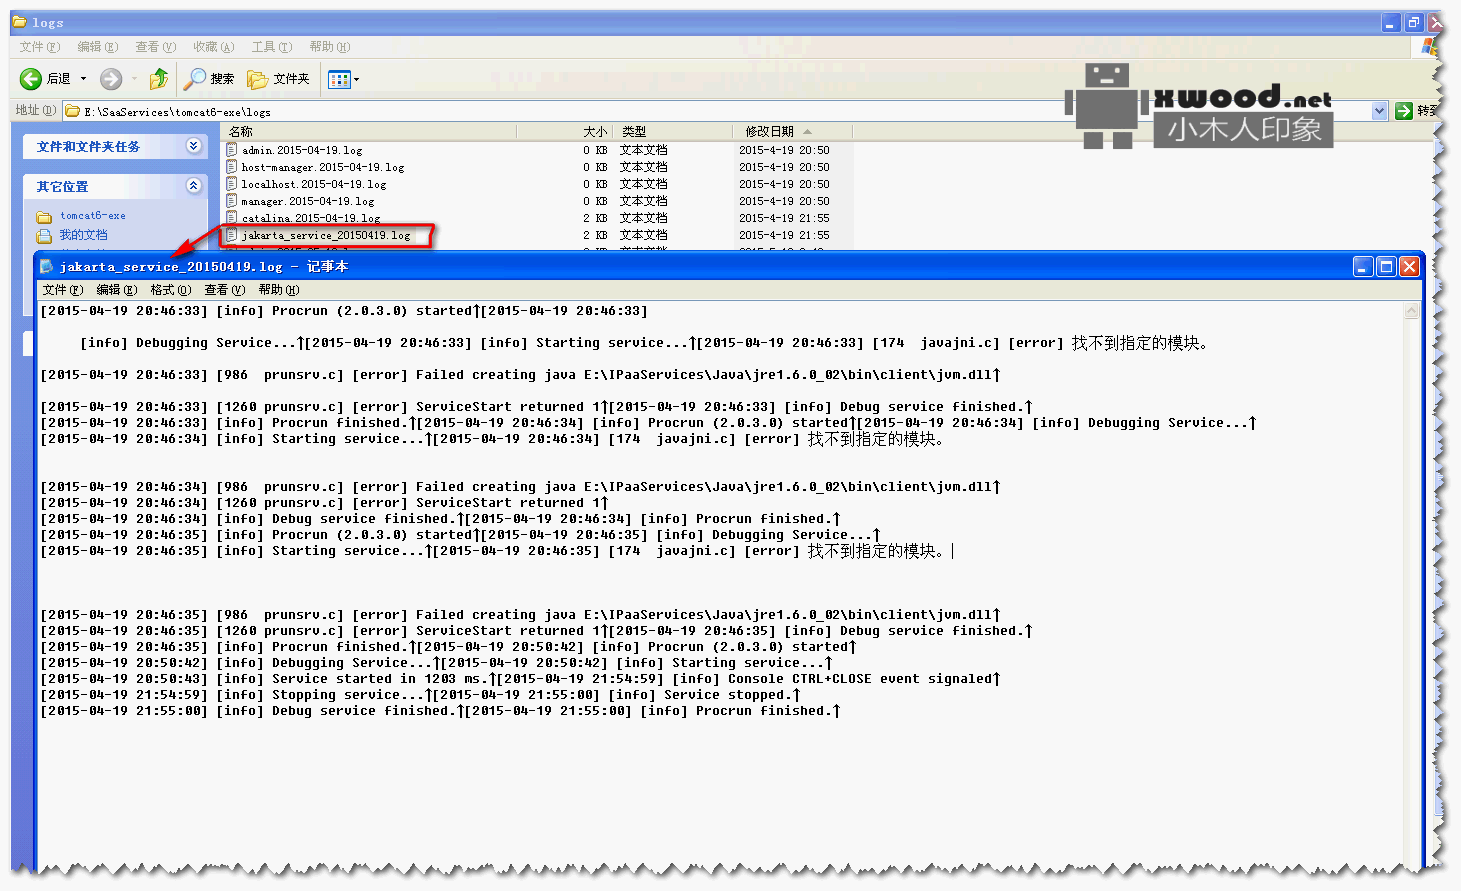 关于“tomcat启动报错：javajni.c] [error] 找不到指定的模块”如何解决